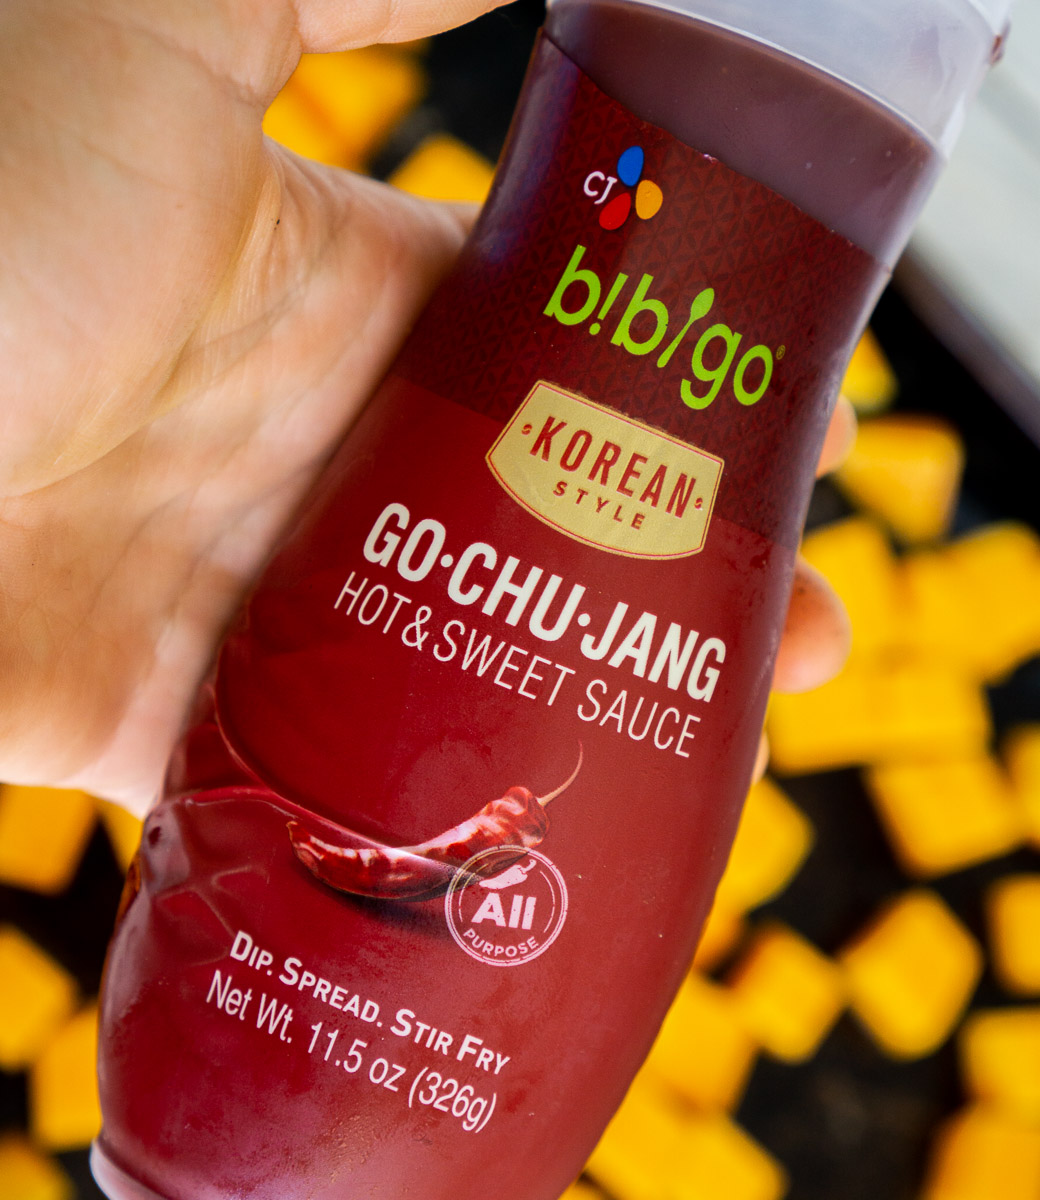 bottle of gochujang sauce